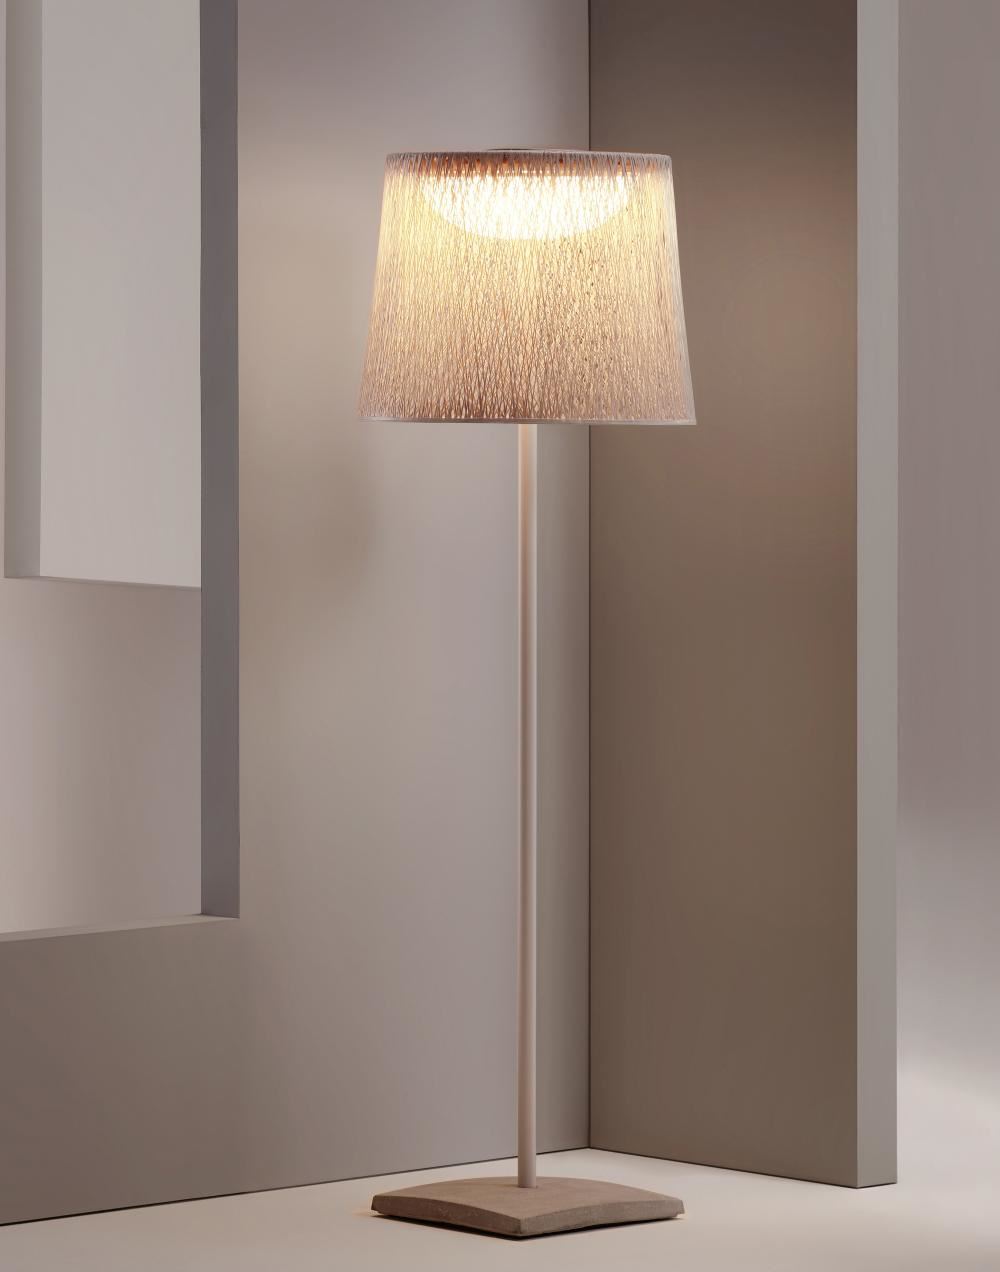 Vibia Wind Outdoor Floor Light 4062 Brown Outdoor Lighting Outdoor Lighting Designer Floor Lamp